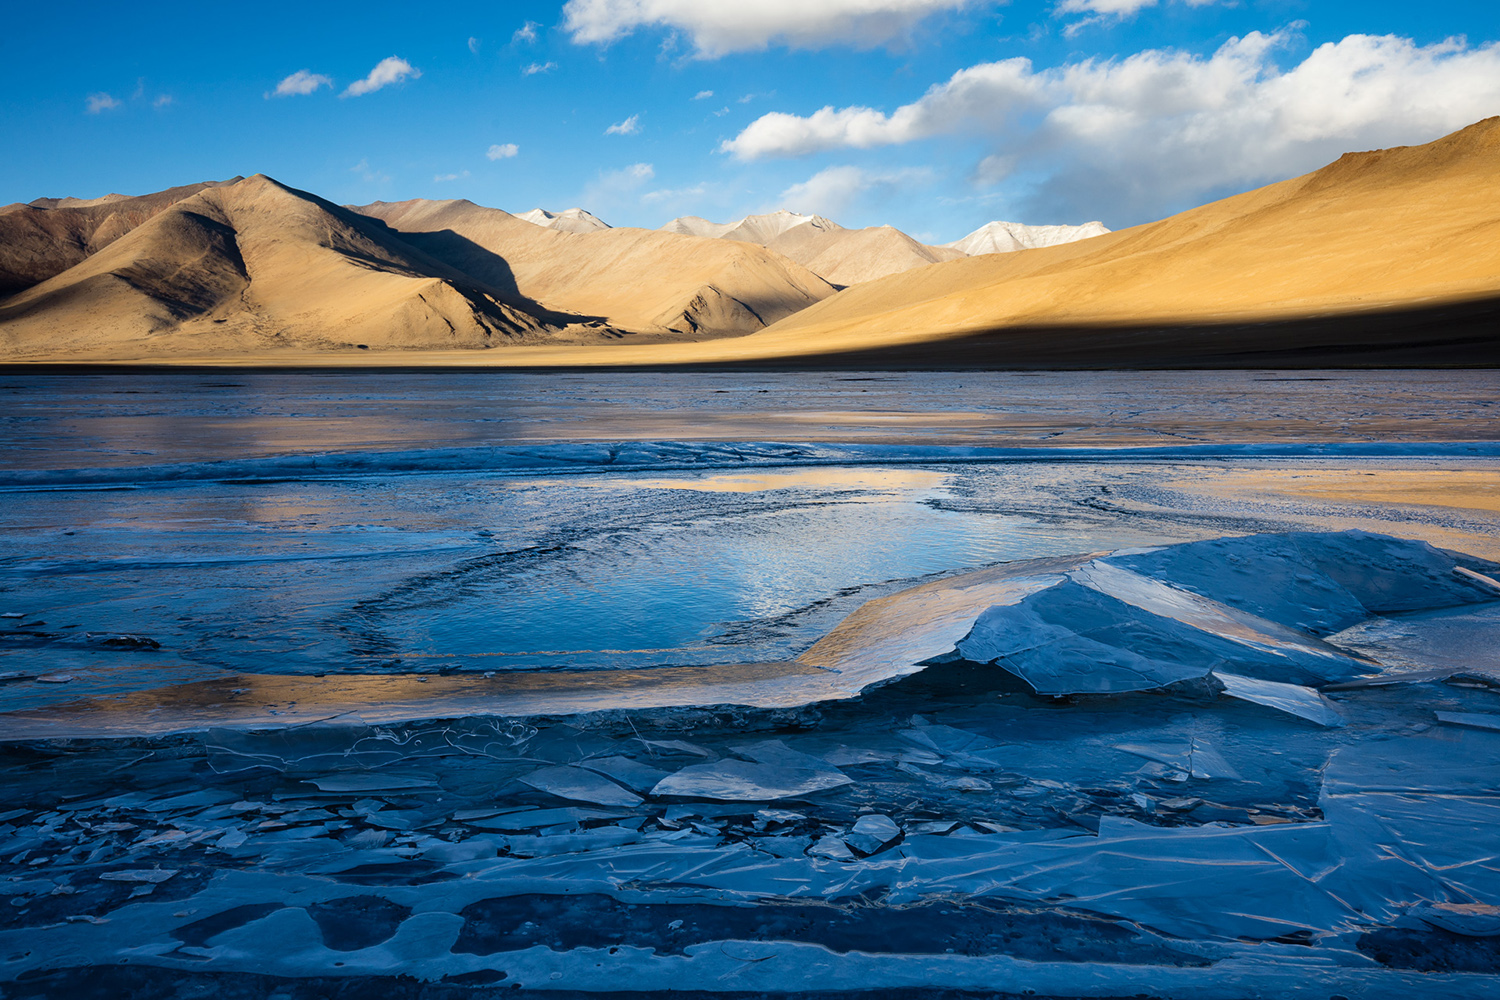 Glace sur le lac de Startsapuk, près du Tso Kar, pendant un voyage photo au Ladakh en hiver